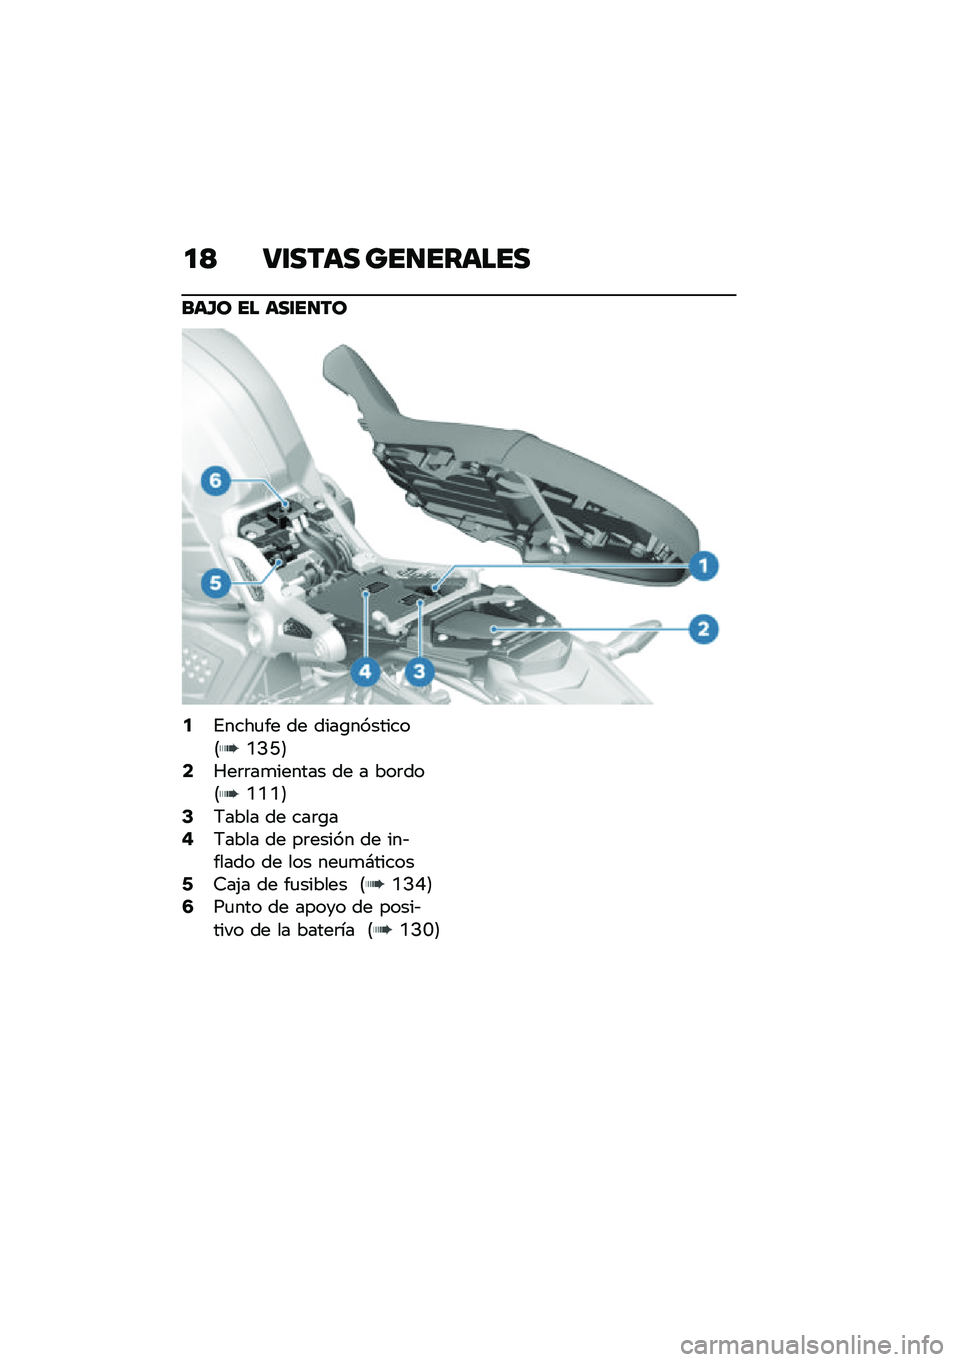 BMW MOTORRAD R NINE T SCRAMBLER 2020  Manual de instrucciones (in Spanish) �
�? �:�\f���� ���
������
���G� �� ���\f��
��
�2�%����
�� �� ����\b��������8�A�>�N�9�4�P��	�	��
������ �� � ���	���8�A�A�A�9�6�7���� �� ��